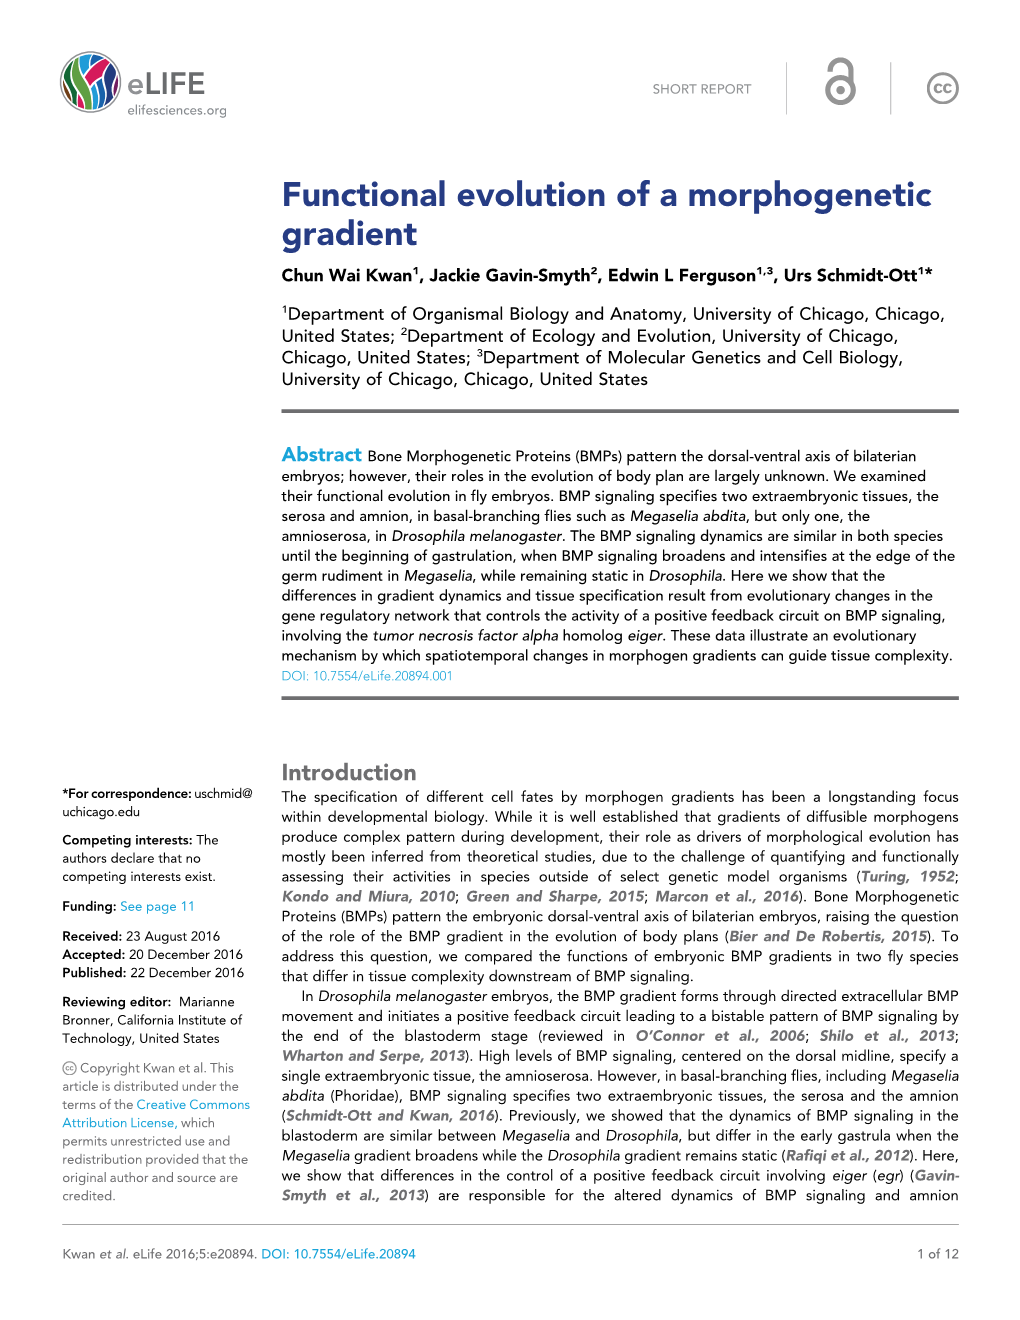 Functional Evolution of a Morphogenetic Gradient Chun Wai Kwan1, Jackie Gavin-Smyth2, Edwin L Ferguson1,3, Urs Schmidt-Ott1*